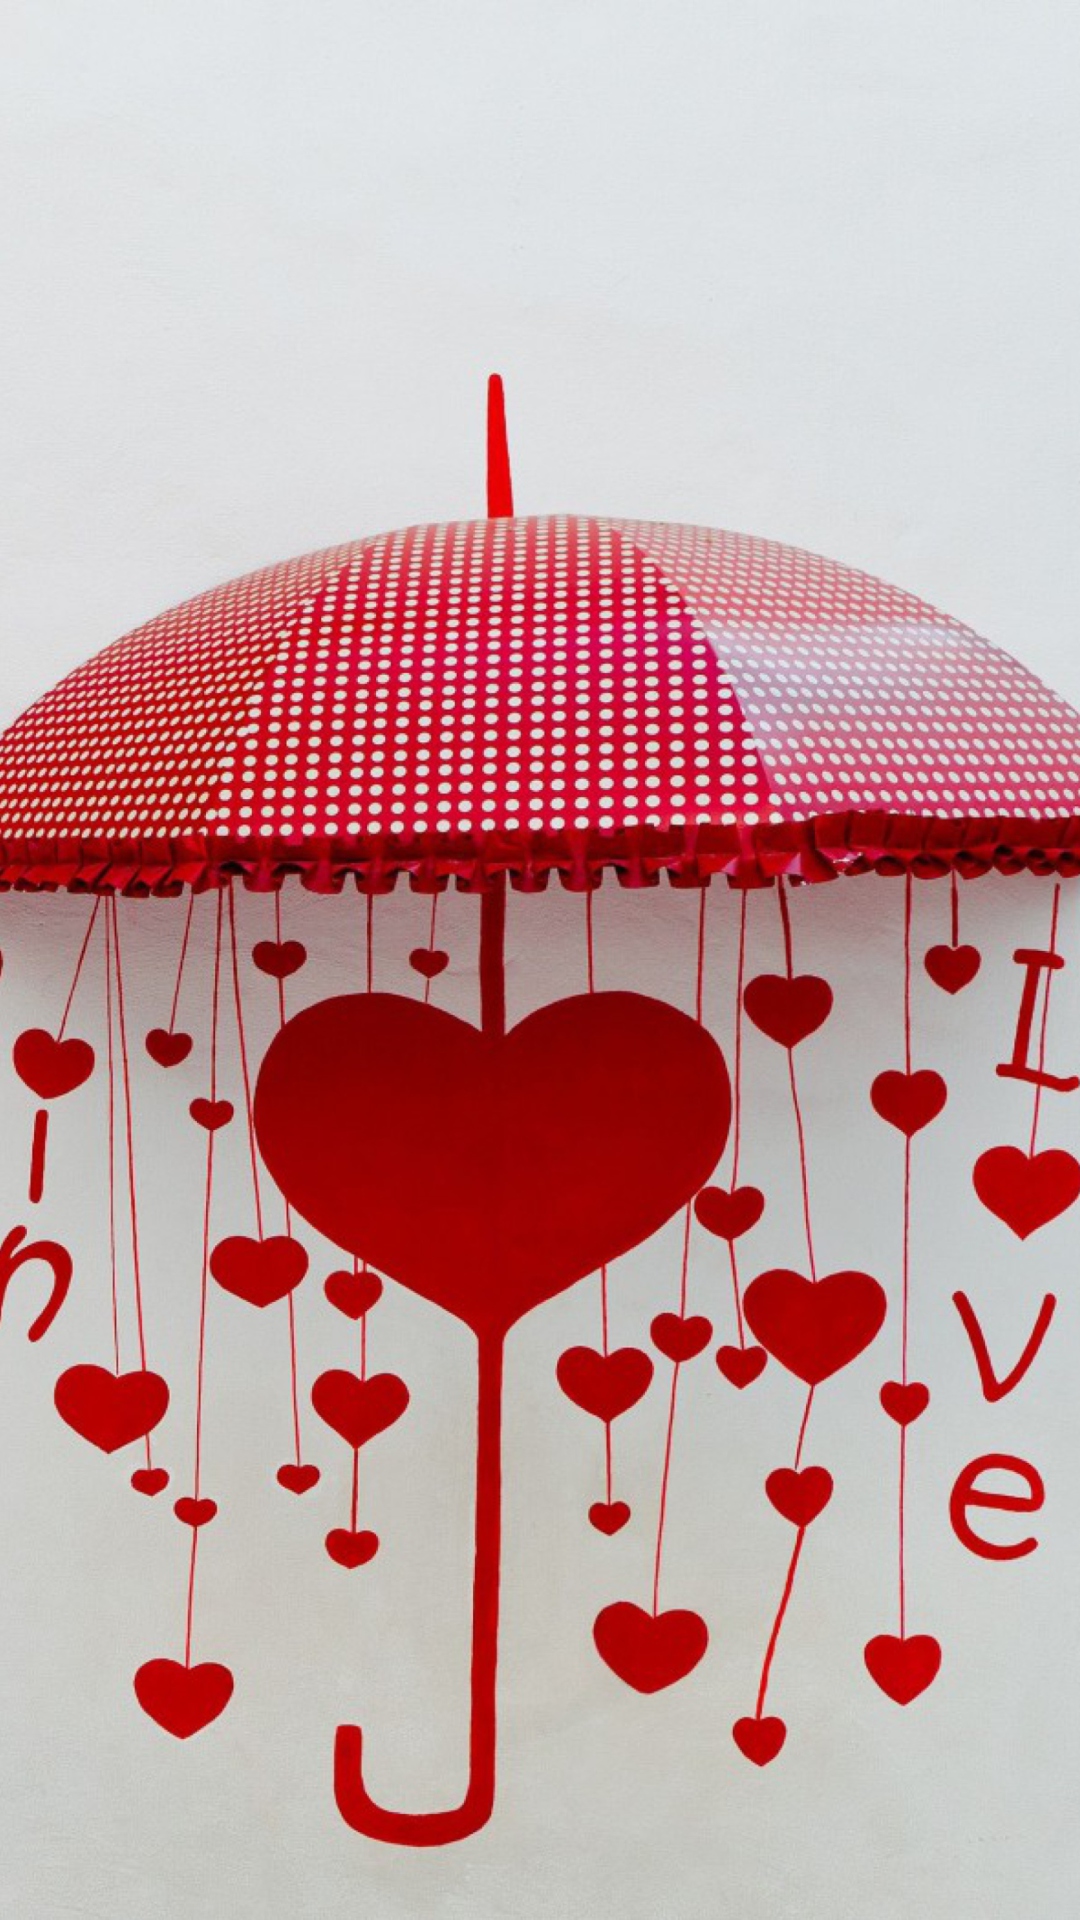 Love Umbrella wallpaper 1080x1920